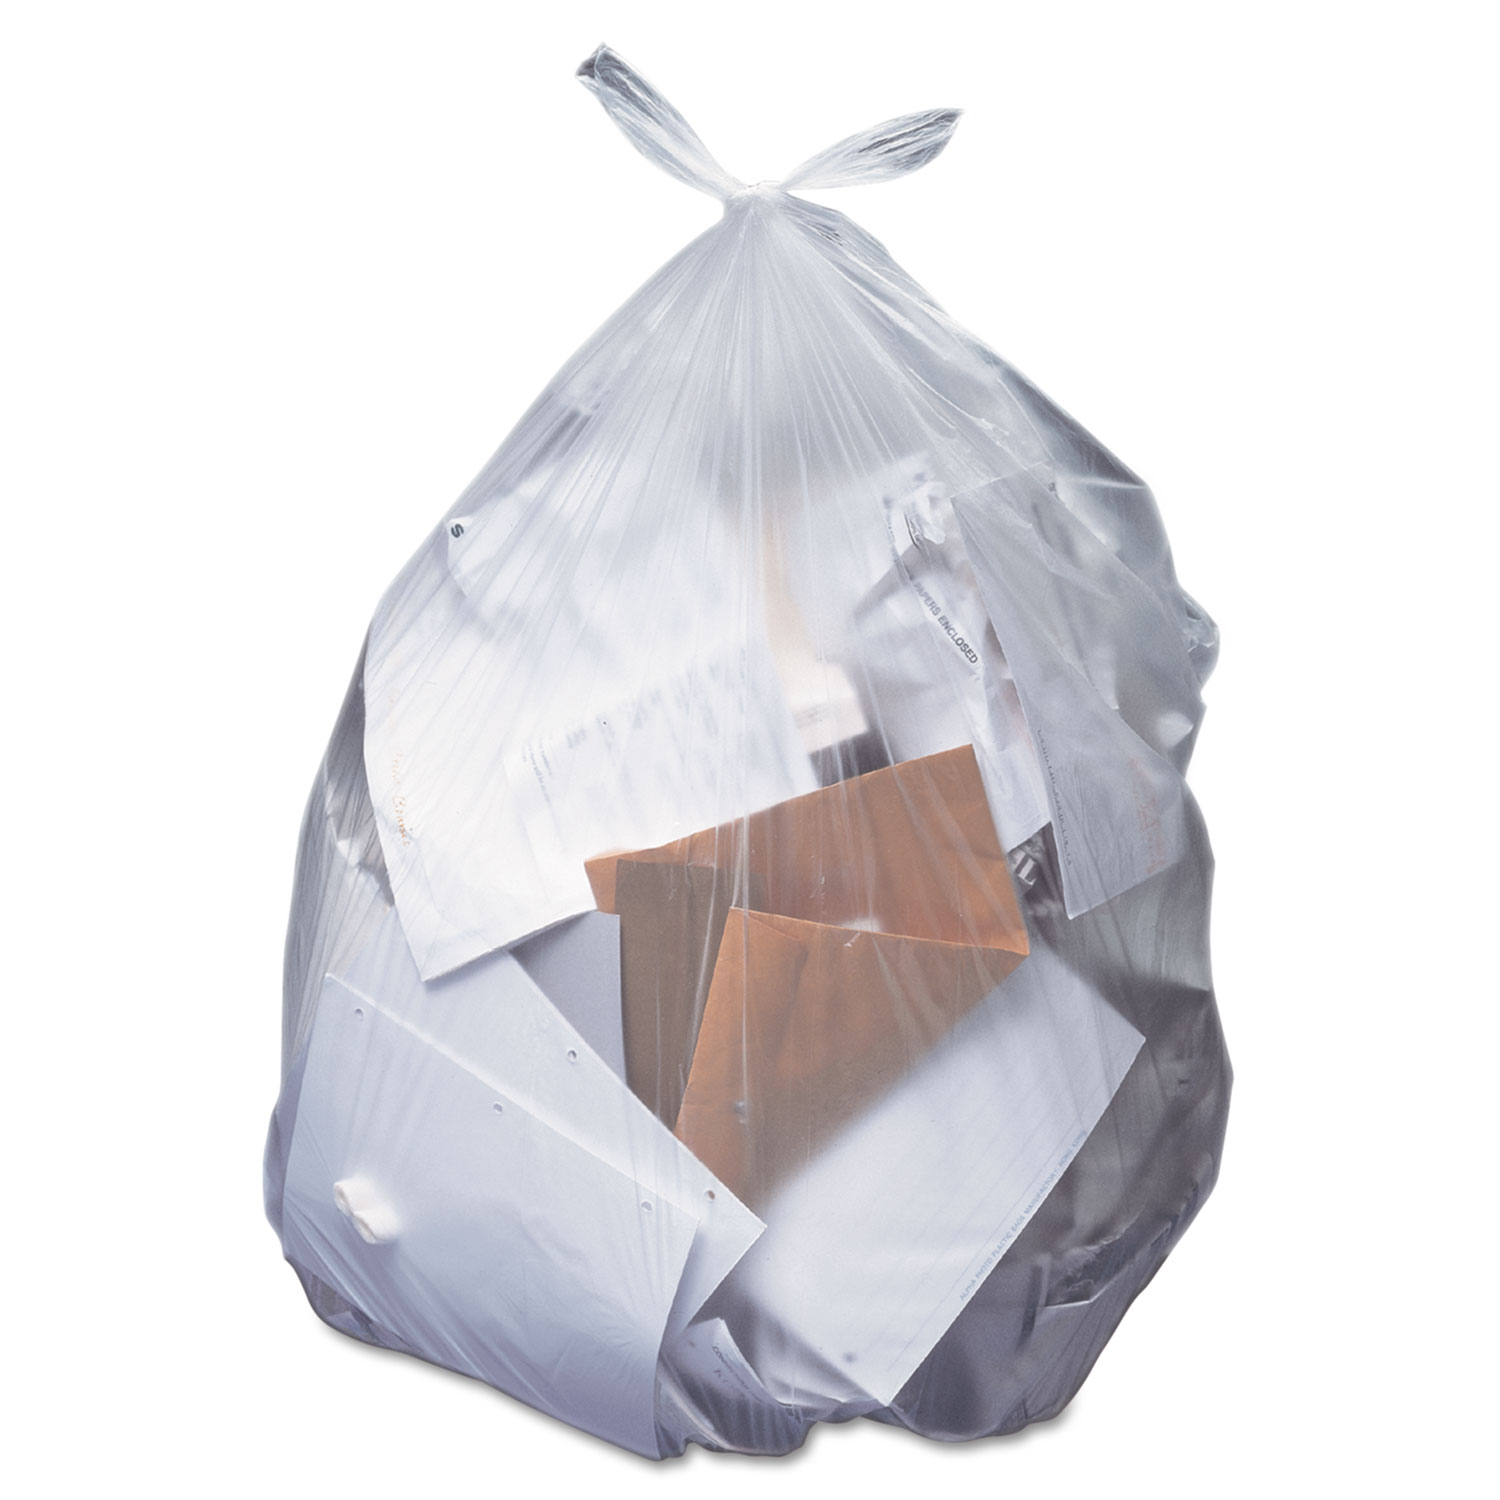 40-45 Gal. Reprocessed Resin Trash Bags, Low Density, 1.5 Mil